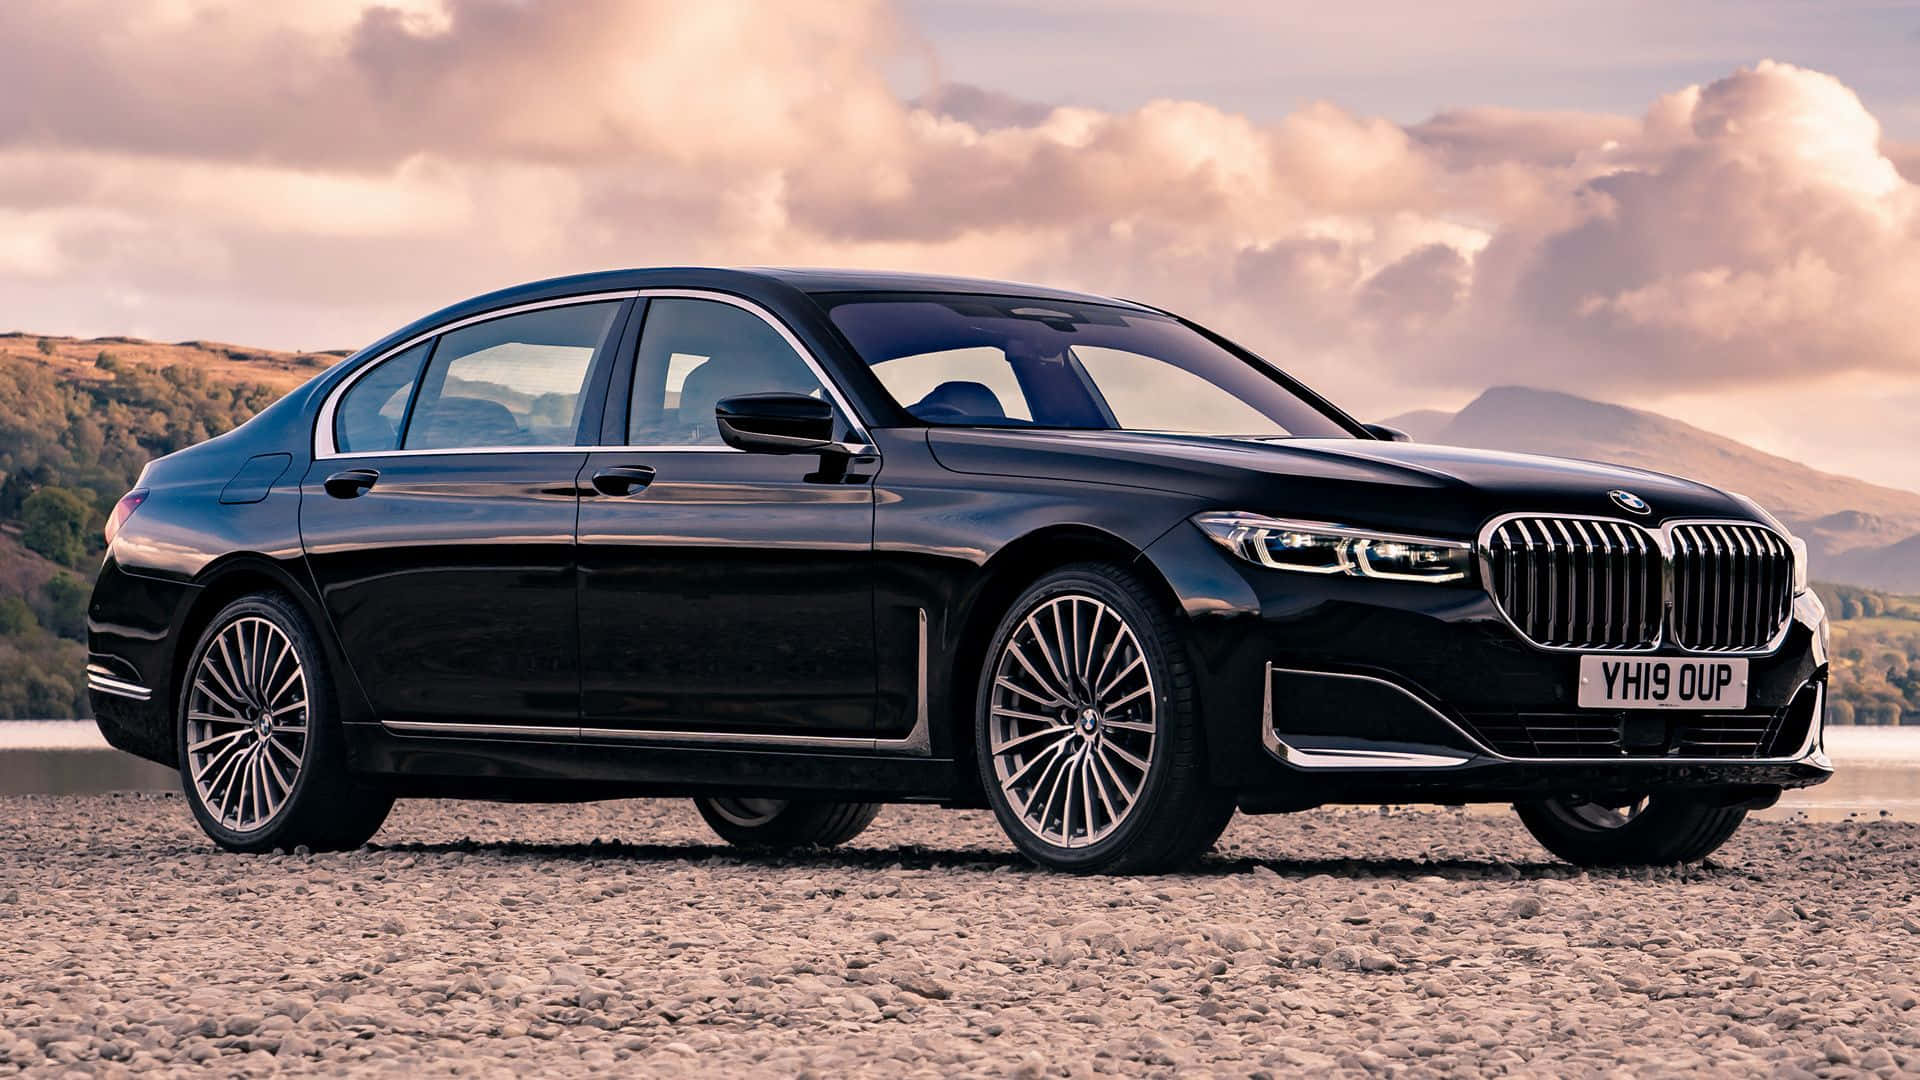 BMW 7 Series - The Ultimate Luxury Sedan Wallpaper